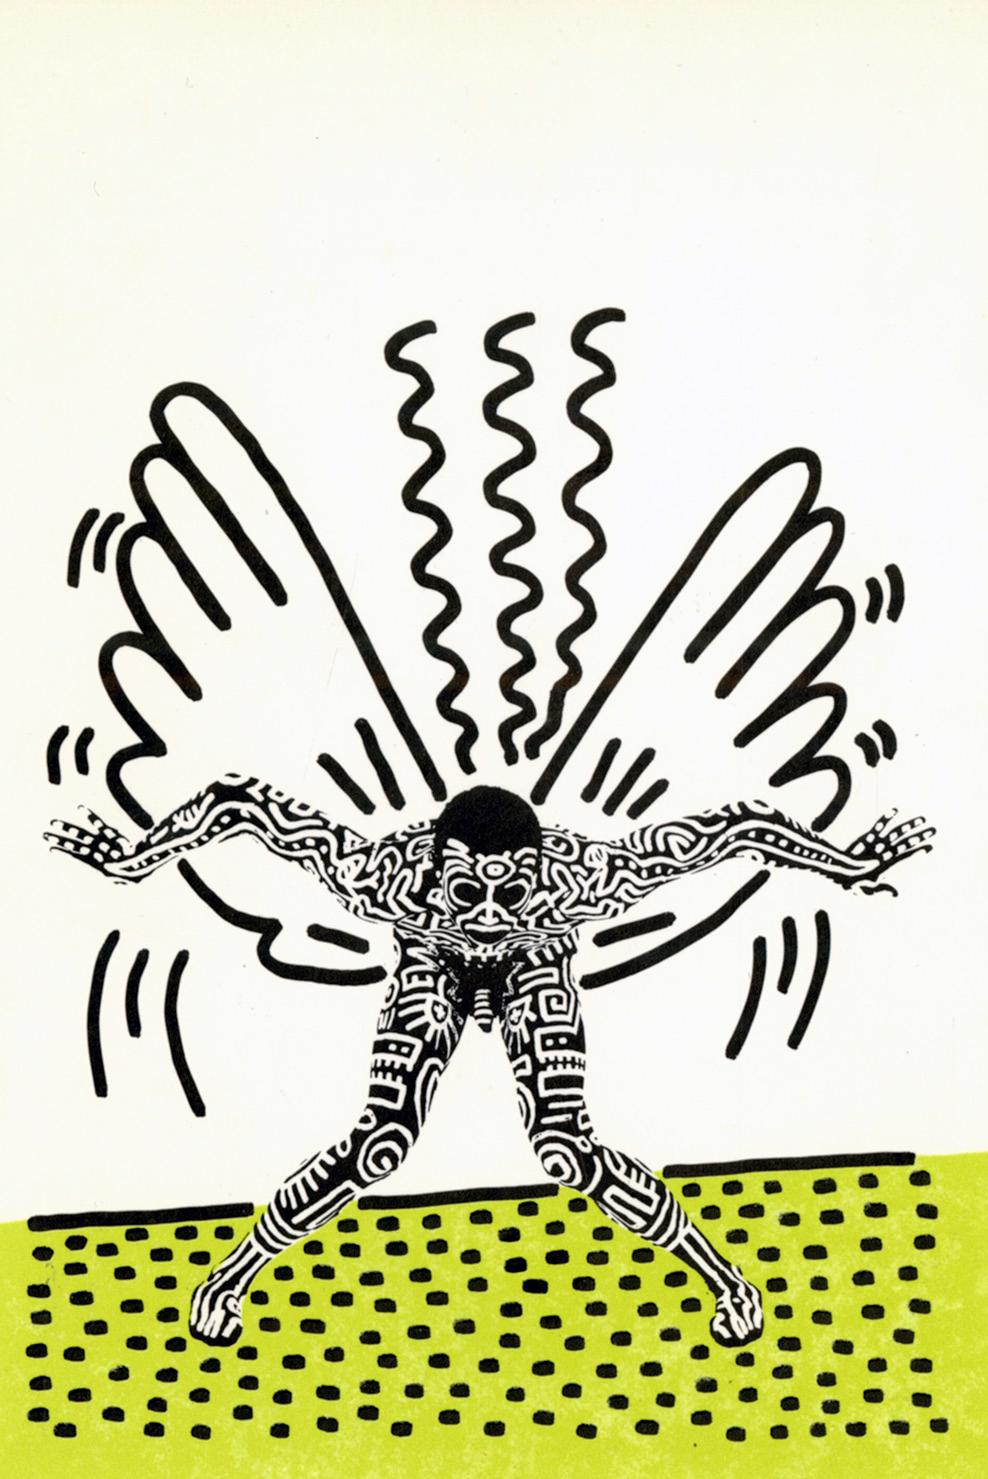 Keith Haring Into 84/Keith Haring Painted Man 1983: 
Ankündigungskarte für die gut dokumentierte Ausstellung "Into 84" von Keith Haring in der Tony Shafrazi Gallery, New York, 1983. Für diese Serie lieh sich Haring den Körper von Bill T. Jones - von